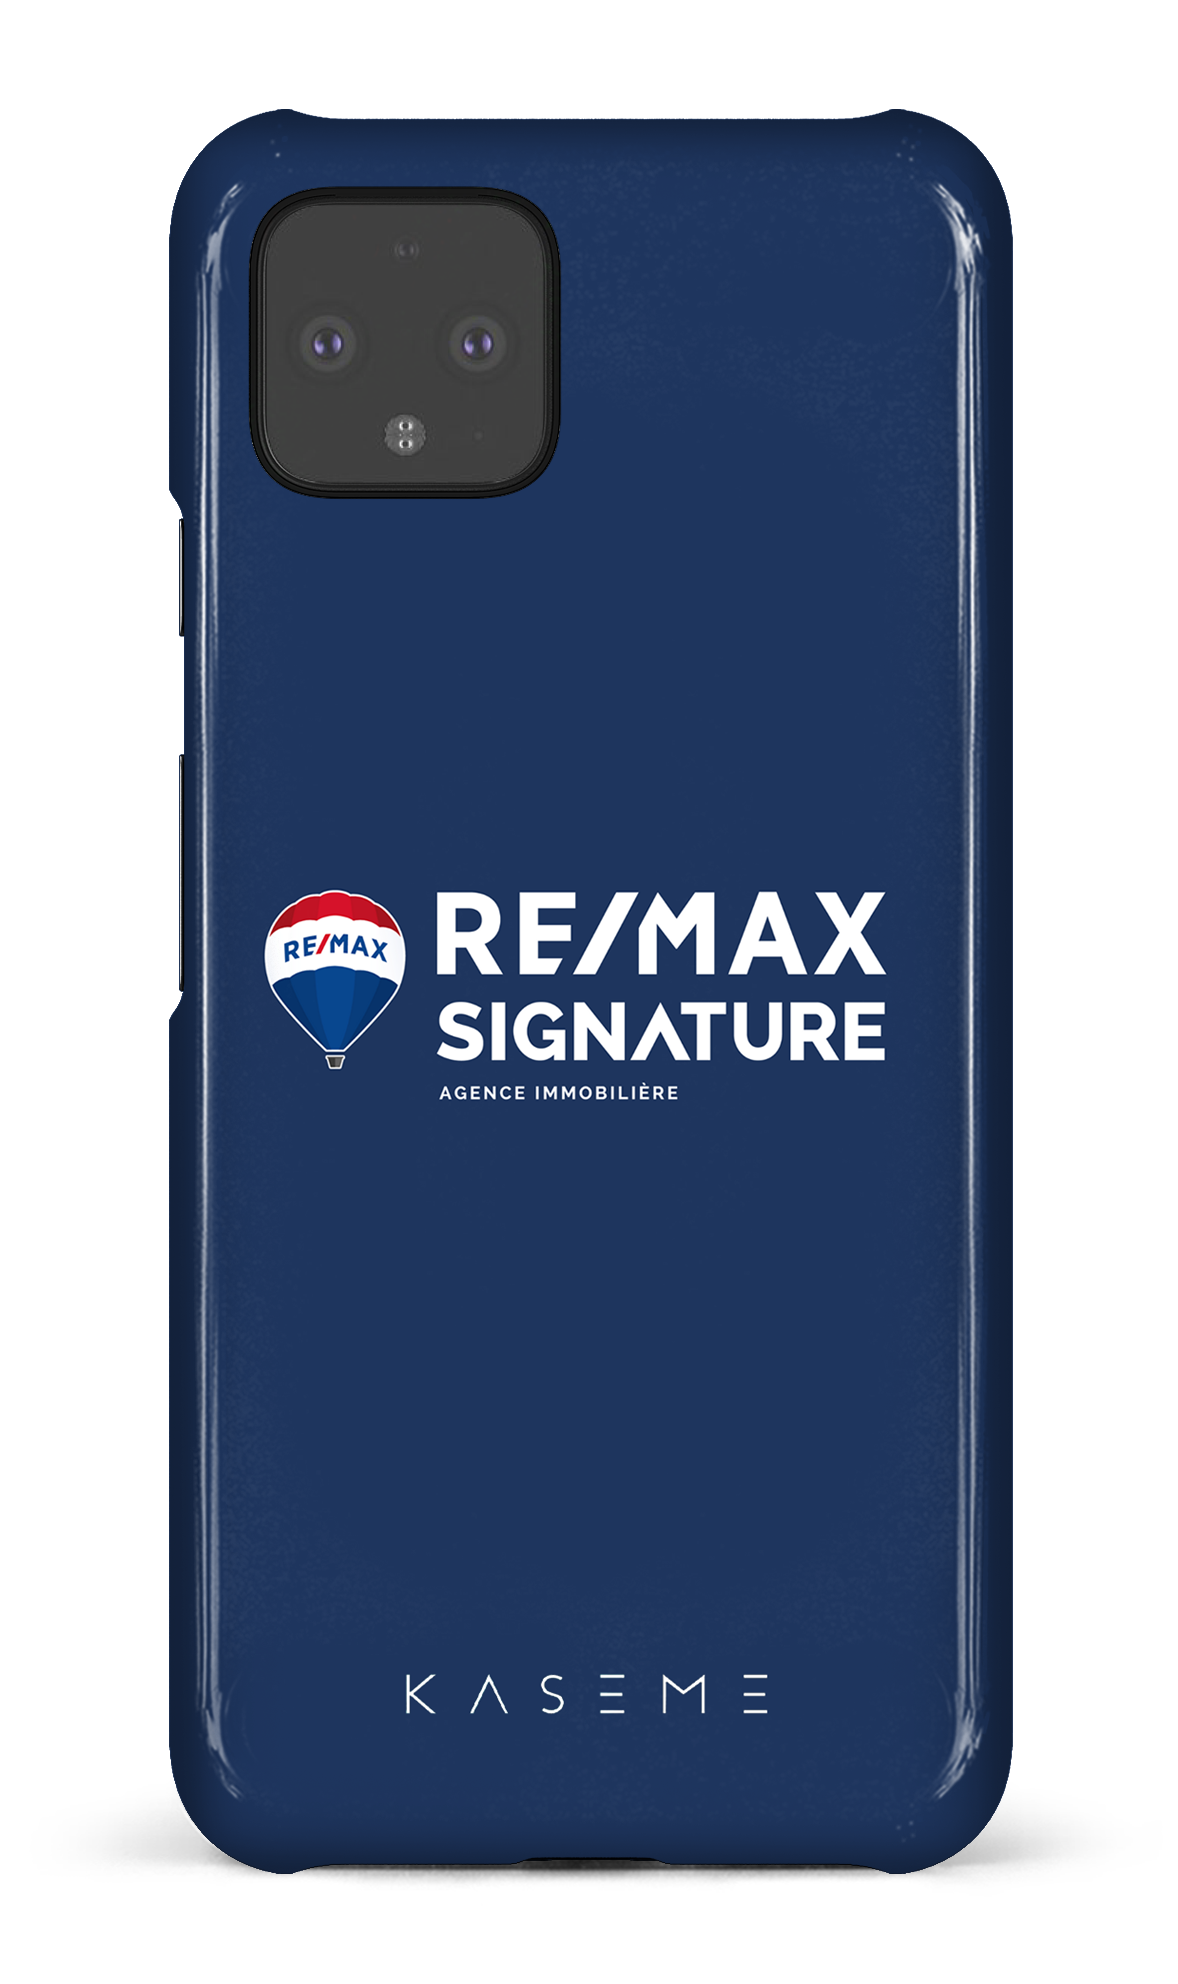 Remax Signature Bleu - Google Pixel 4